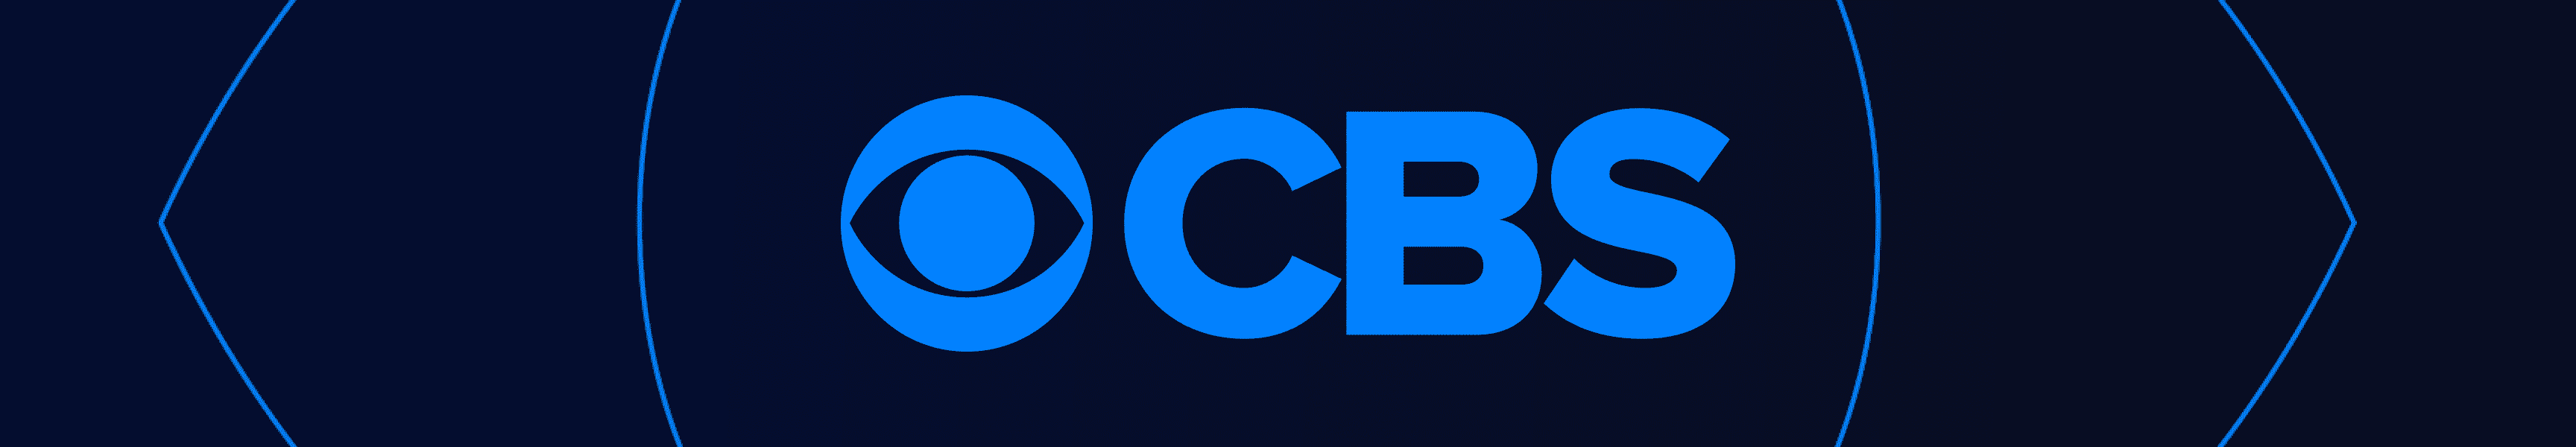 CBS Entertainment Vu à la télévision